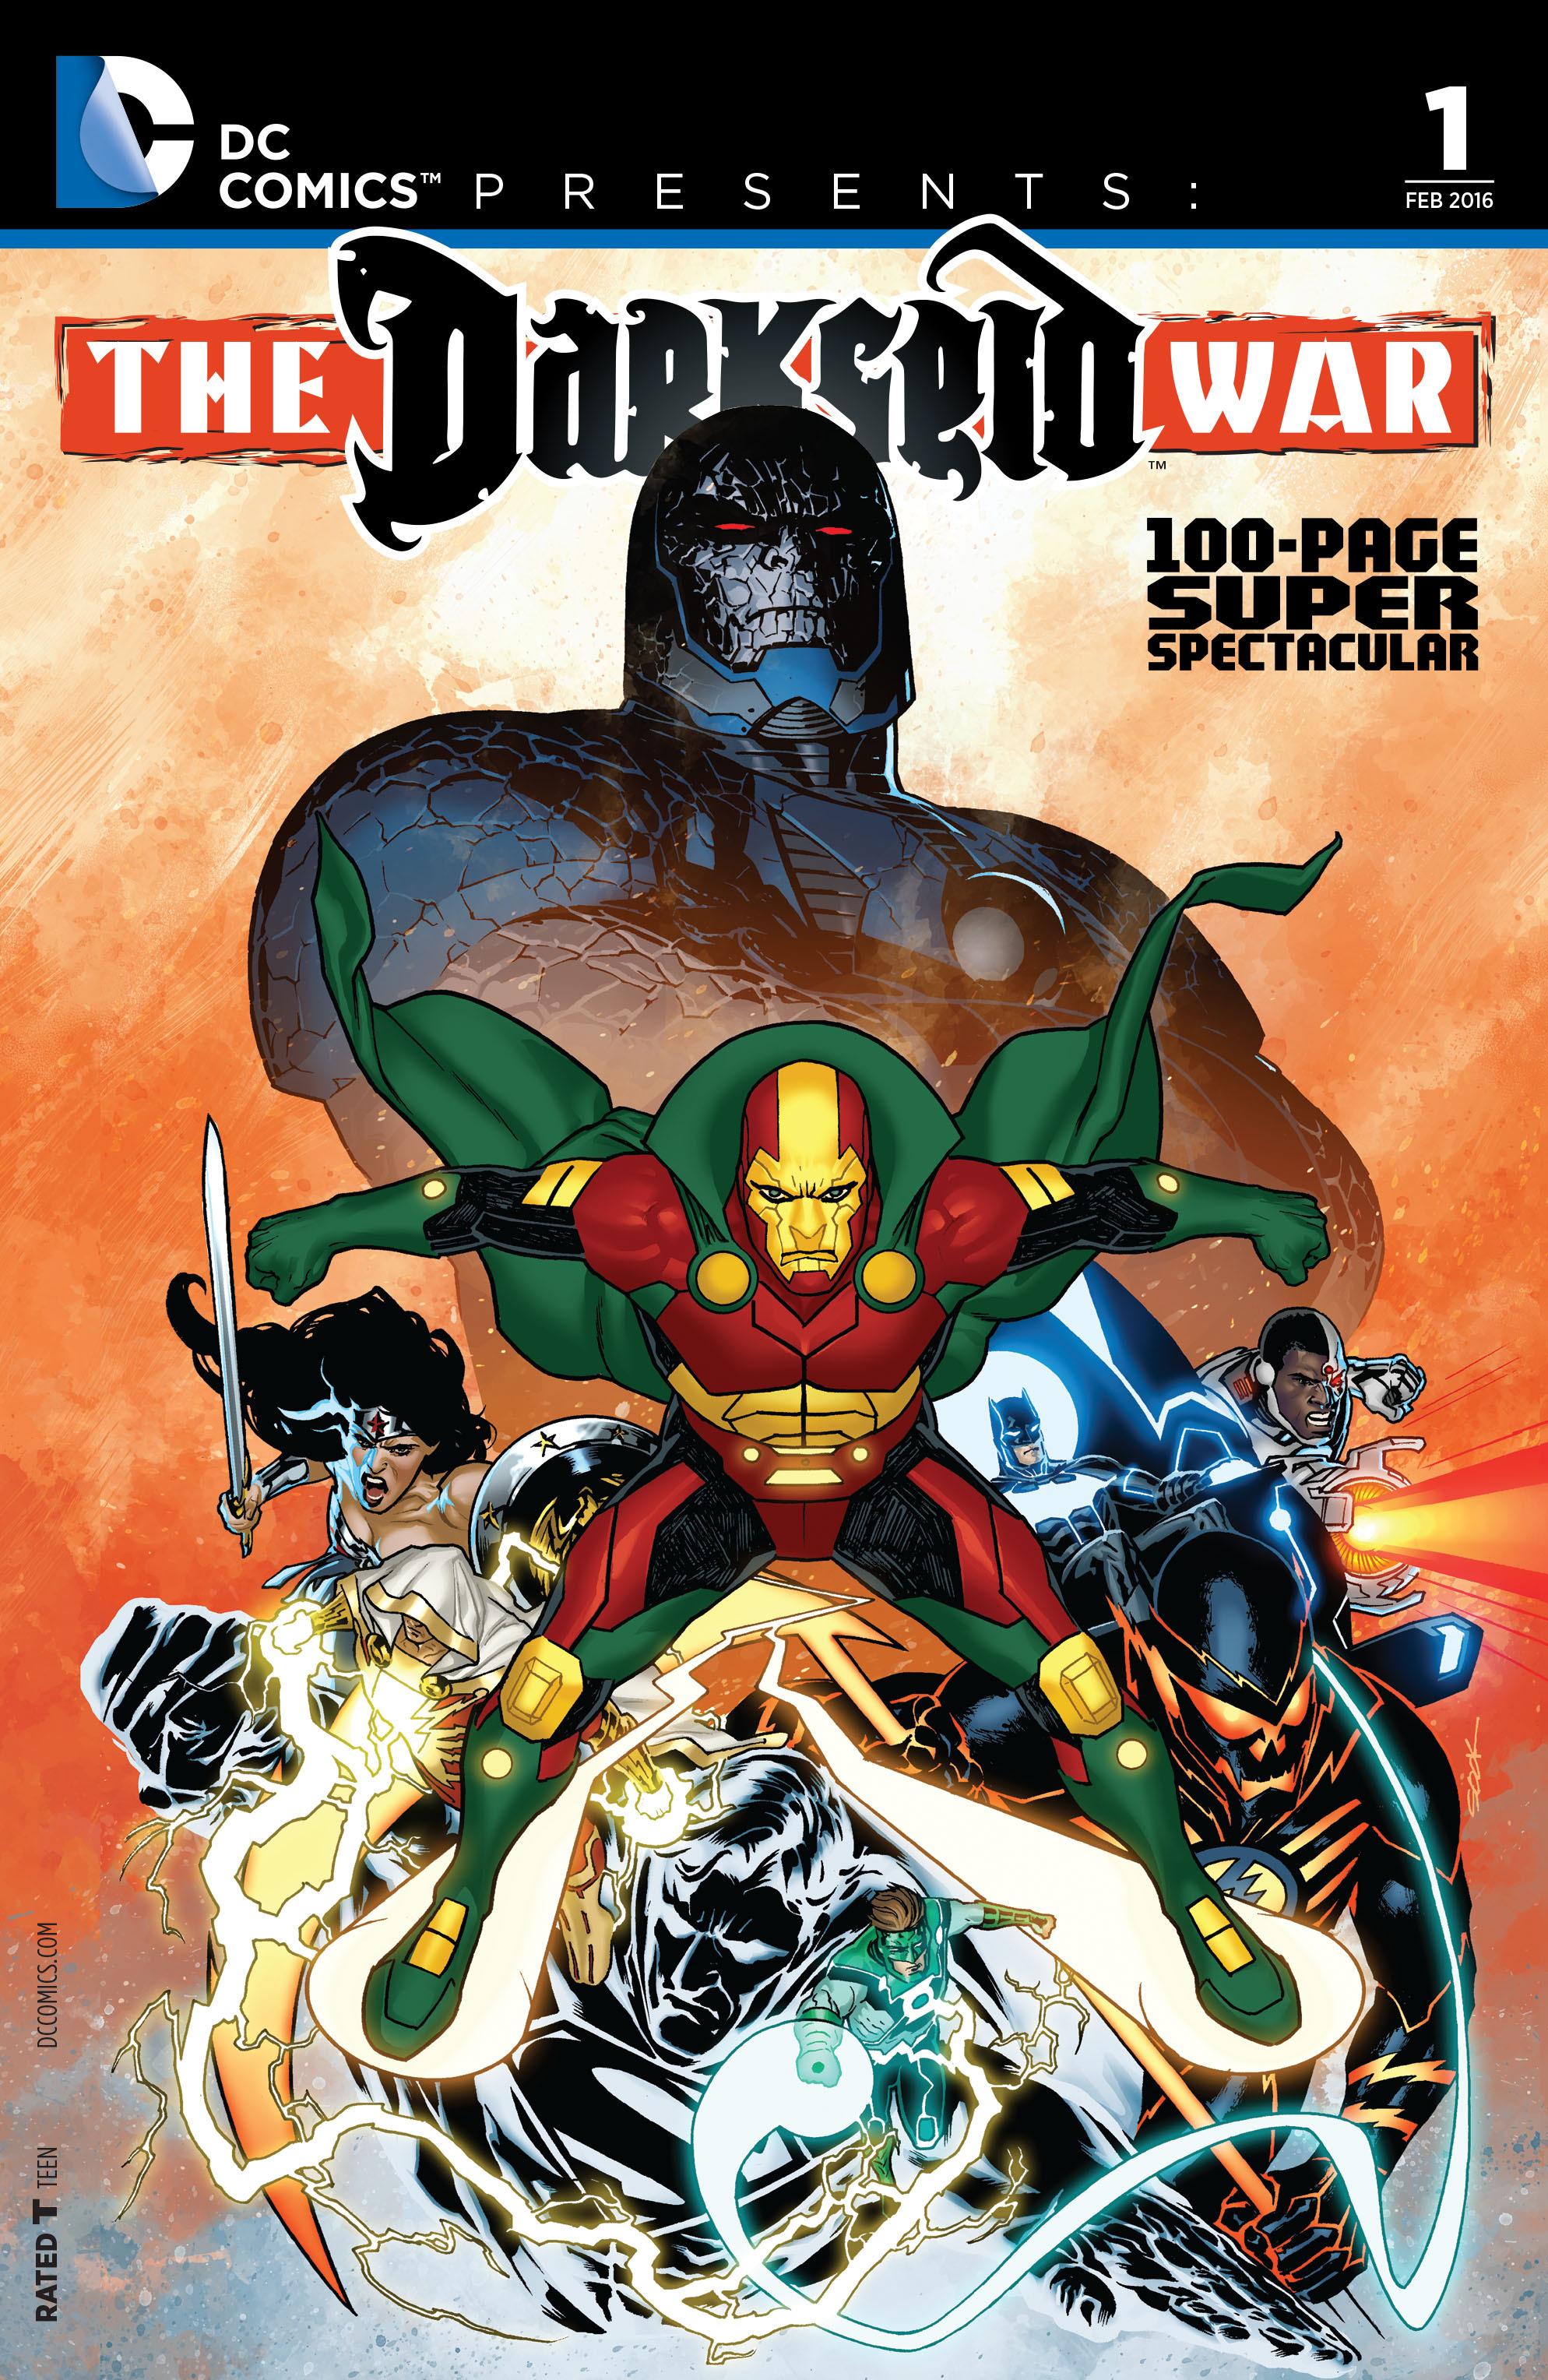 DC Comics Presents: Darkseid War 100-Page Spectacular Vol. 1 #1